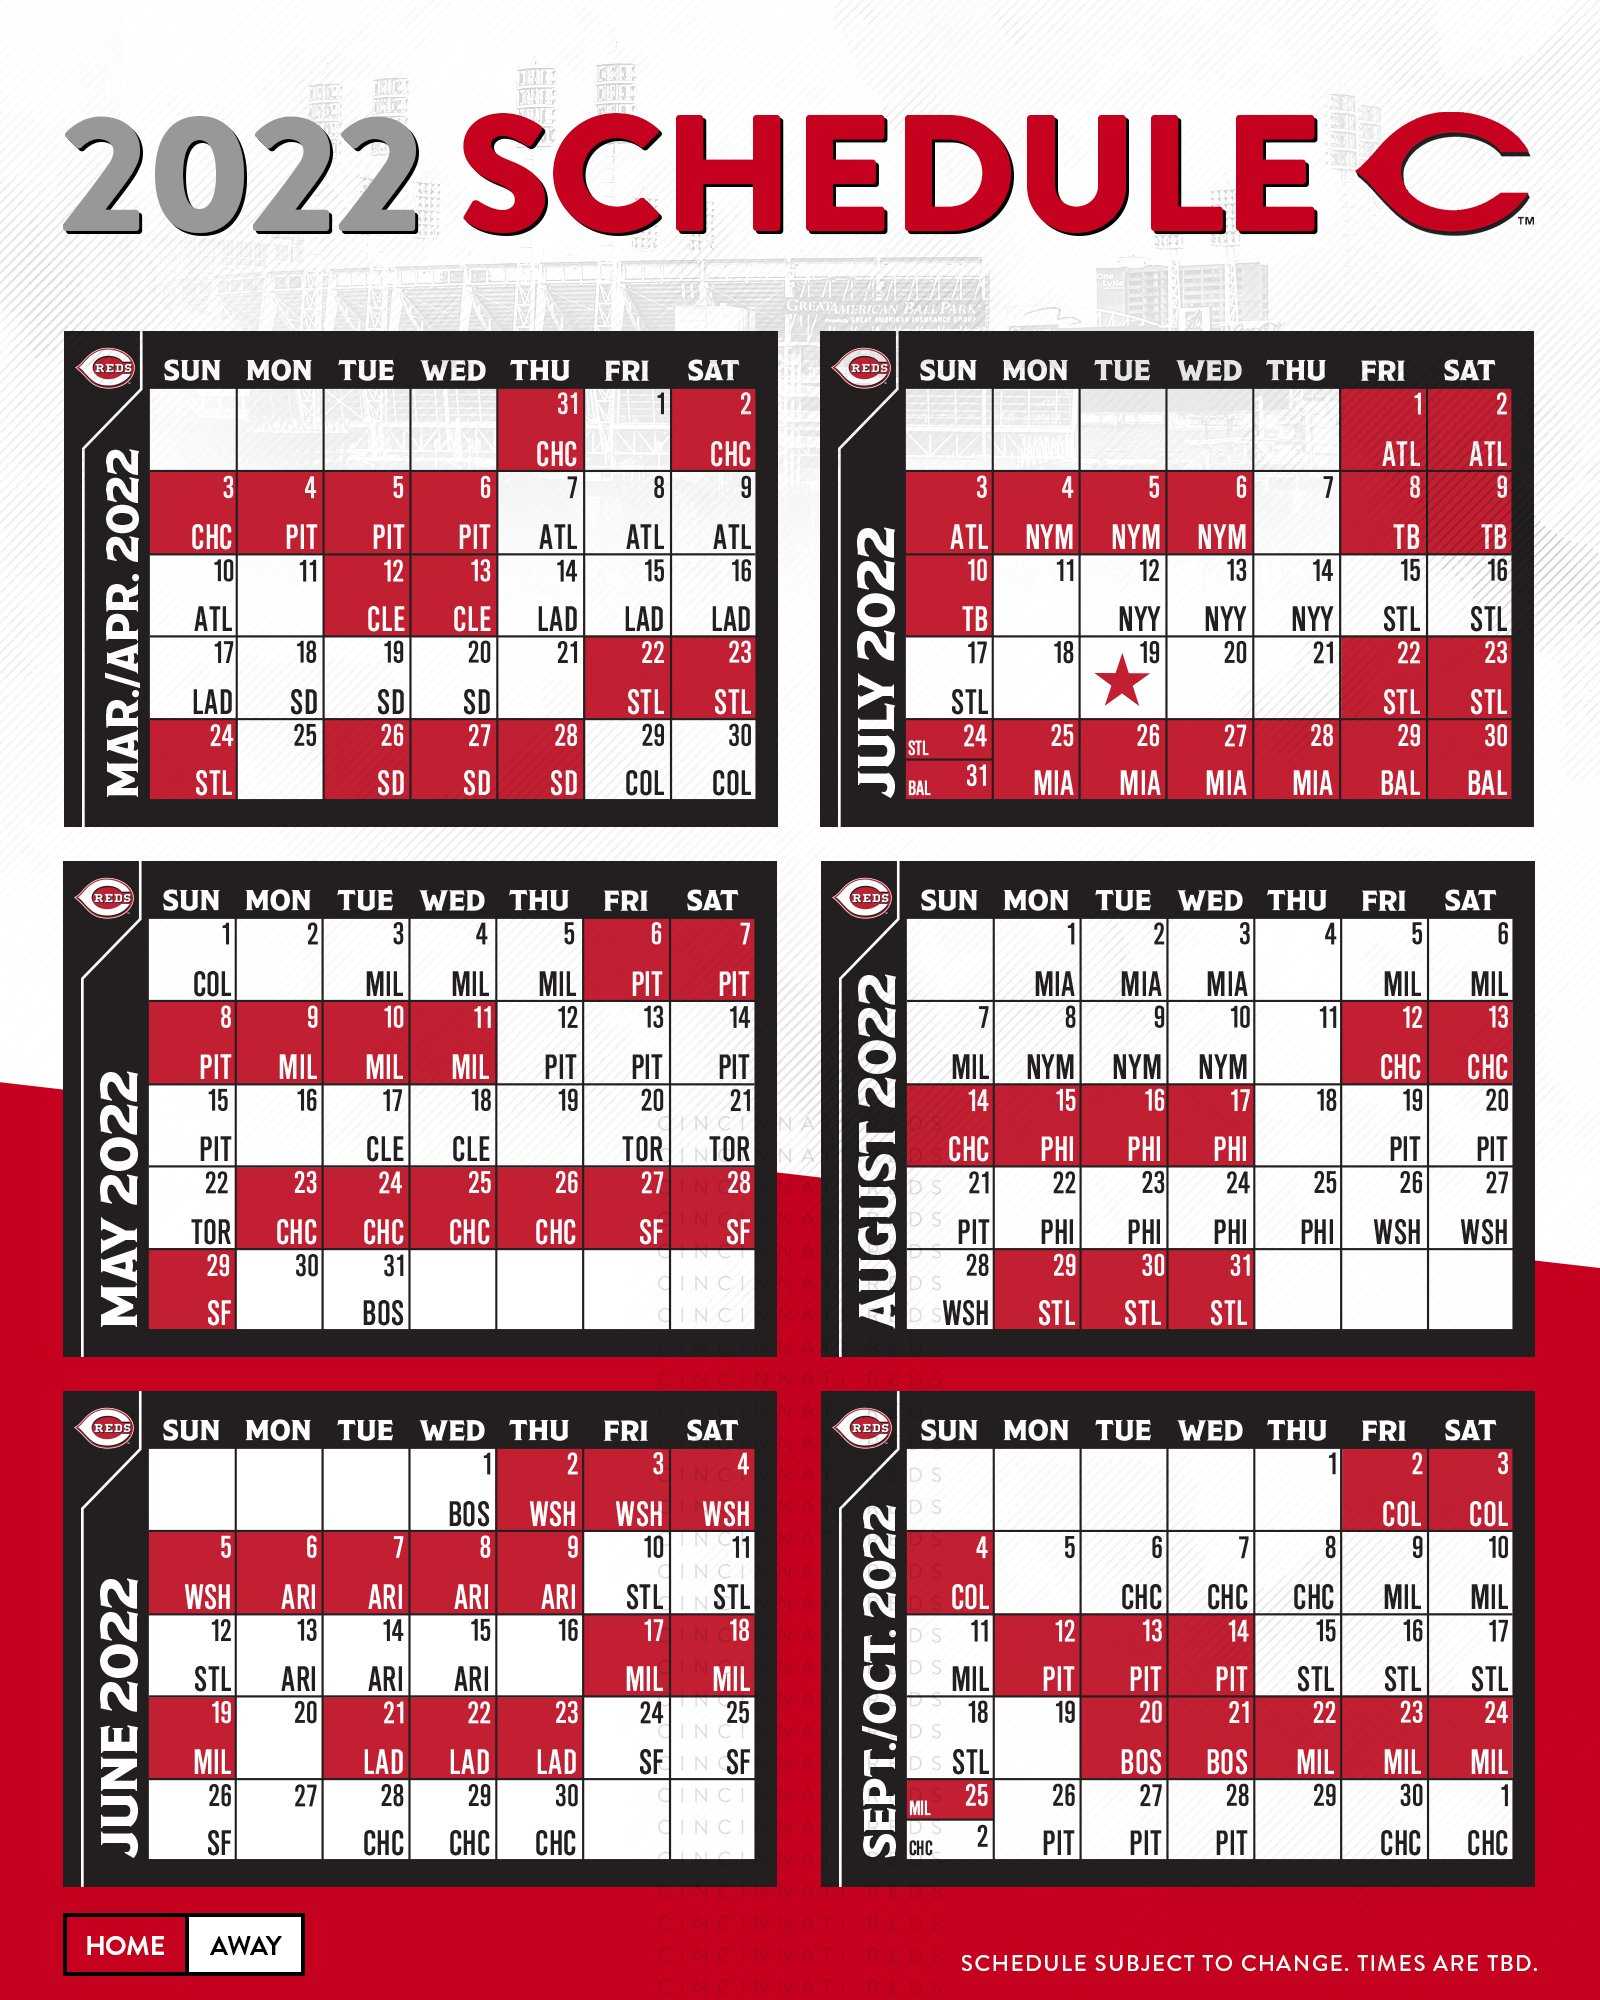 Metv Winter Schedule 2022 Cincinnati Reds Release 2022 Schedule: Here Are The Highlights